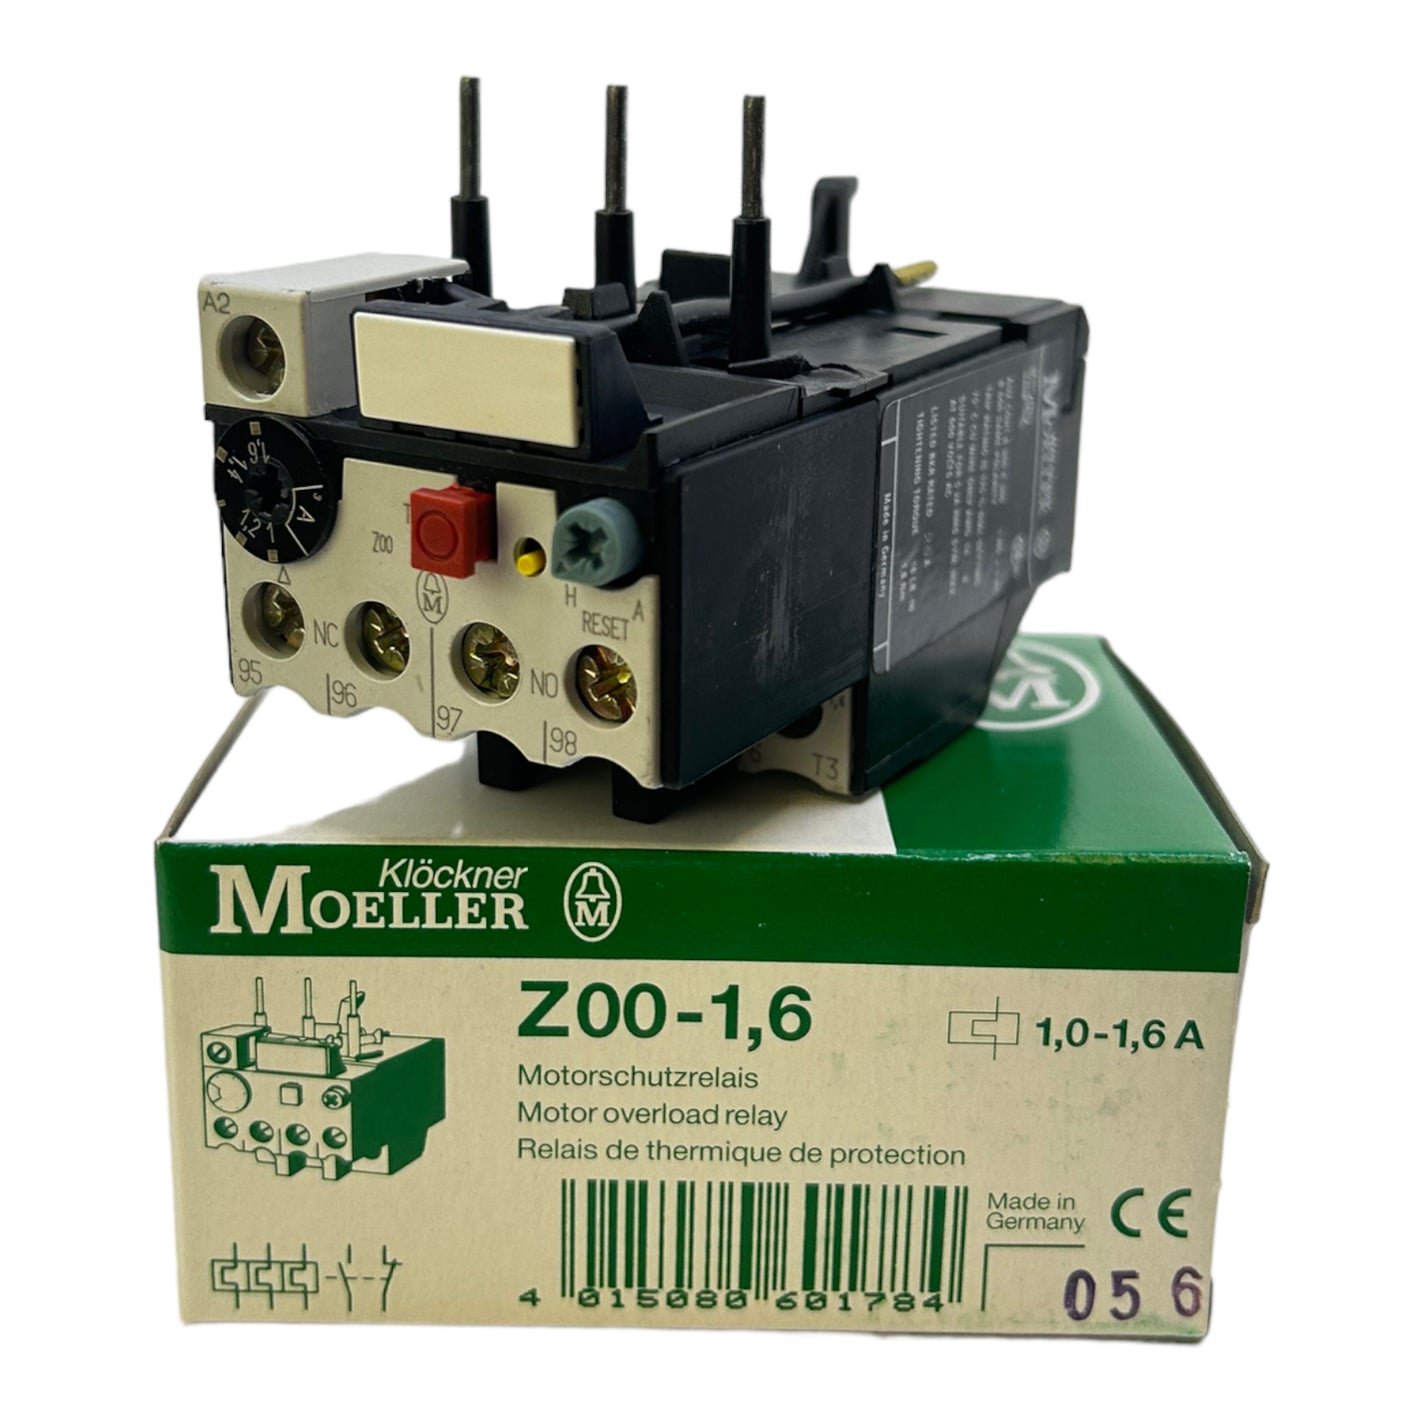 Klöckner Moeller Z00-1,6 motor protection relay 1,0-1,6A 1NO+1NC IP20 